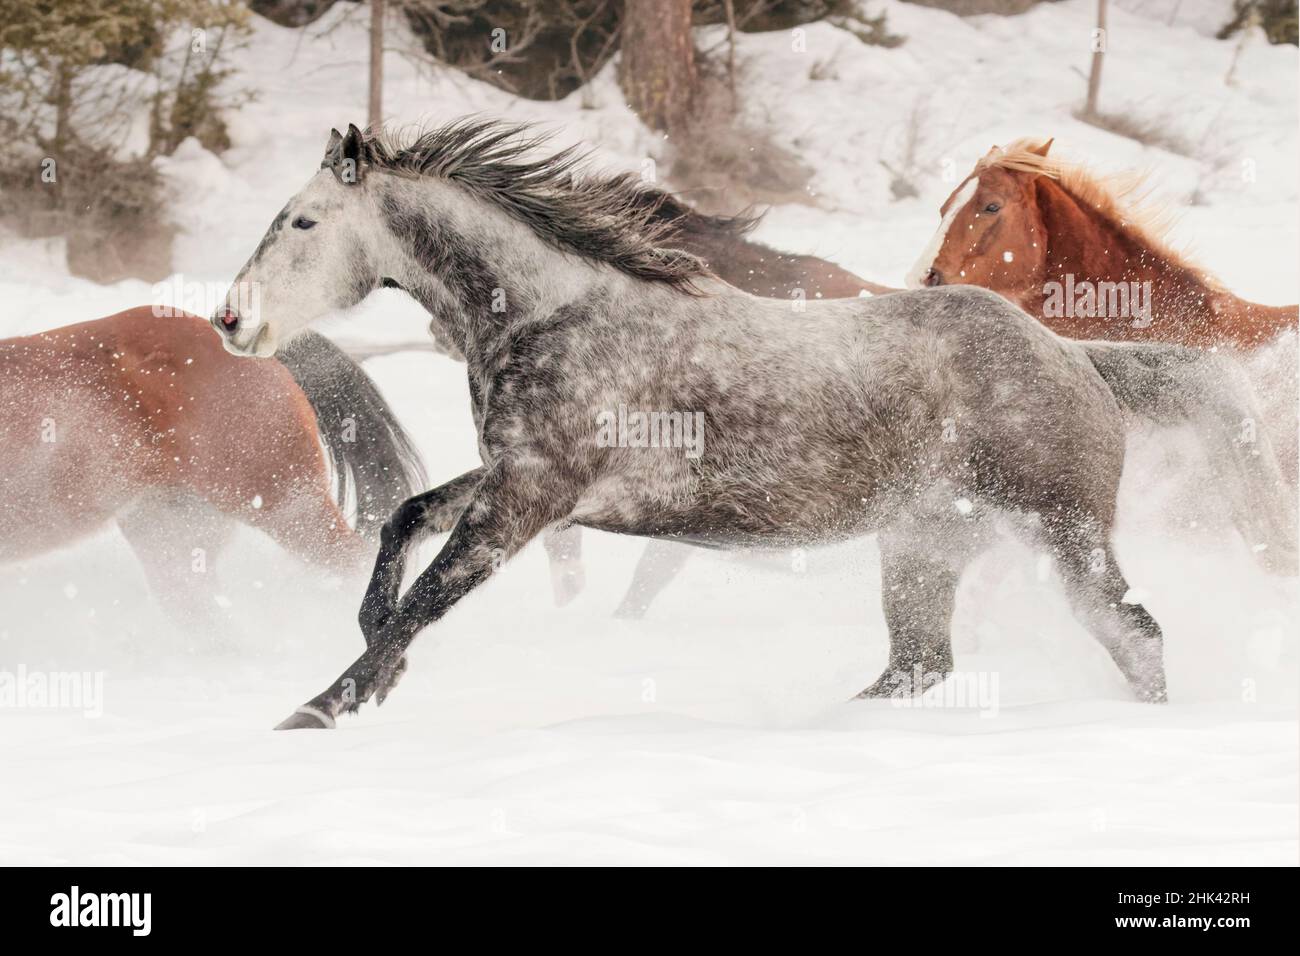 Horse roundup in winter, Kalispell, Montana Equus ferus caballus Stock Photo